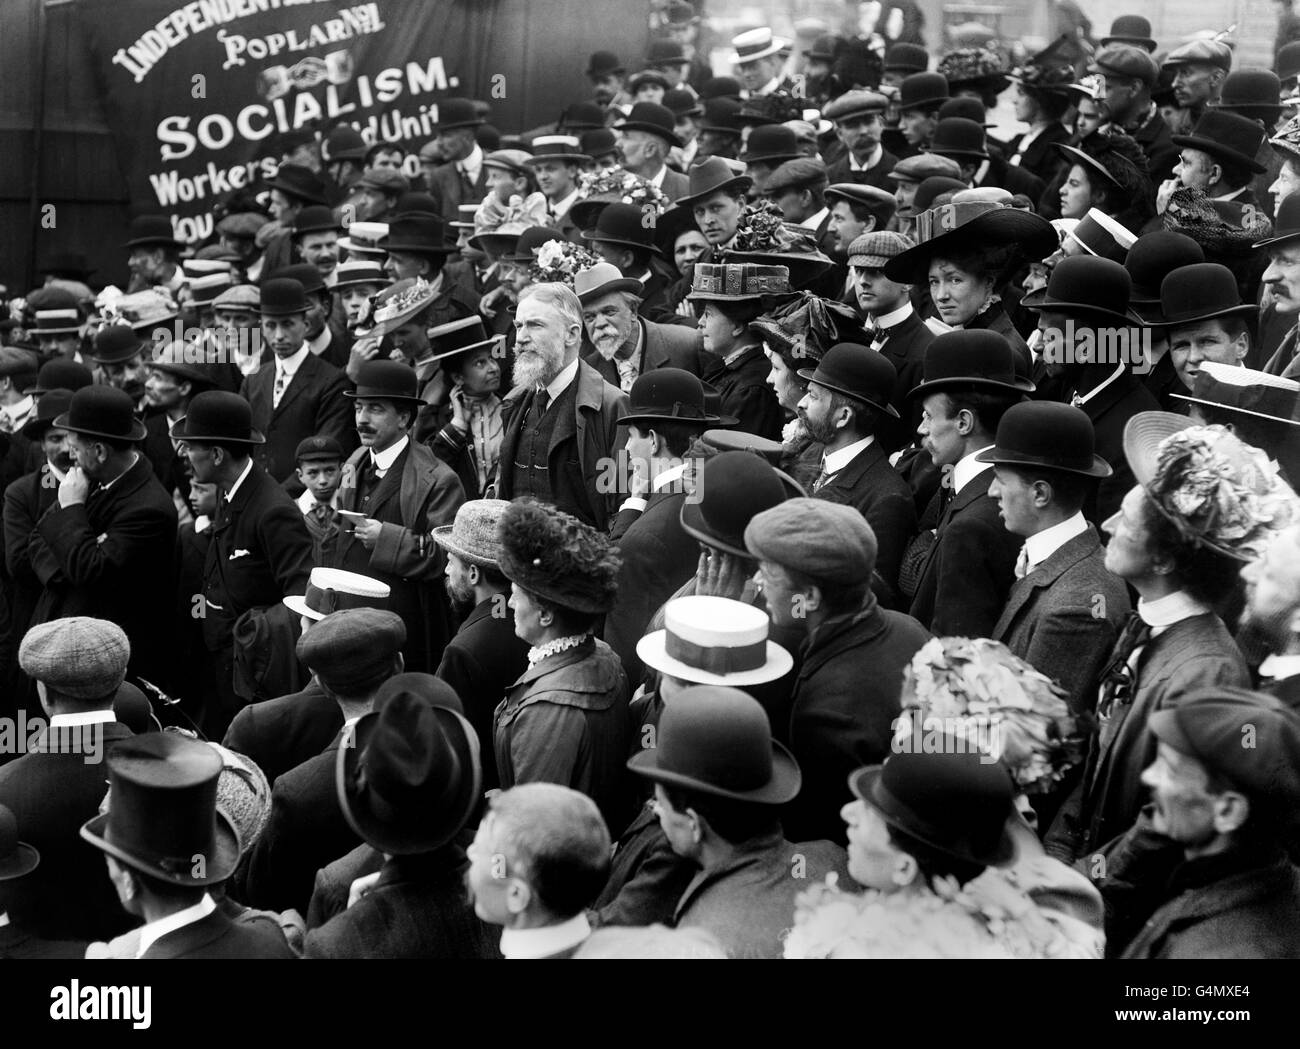 Ein Gesicht in der Menge, George Bernard Shaw (Mitte/Bart), irischer Dramatiker und Kritiker. Er war ein aktiver Sozialist und wurde Mitglied der Fabian Society, aber seine Hauptwerke sind eher als satirische Angriffe als politische Trakte wirksam. Trafalgar Square, London, C1910. Stockfoto